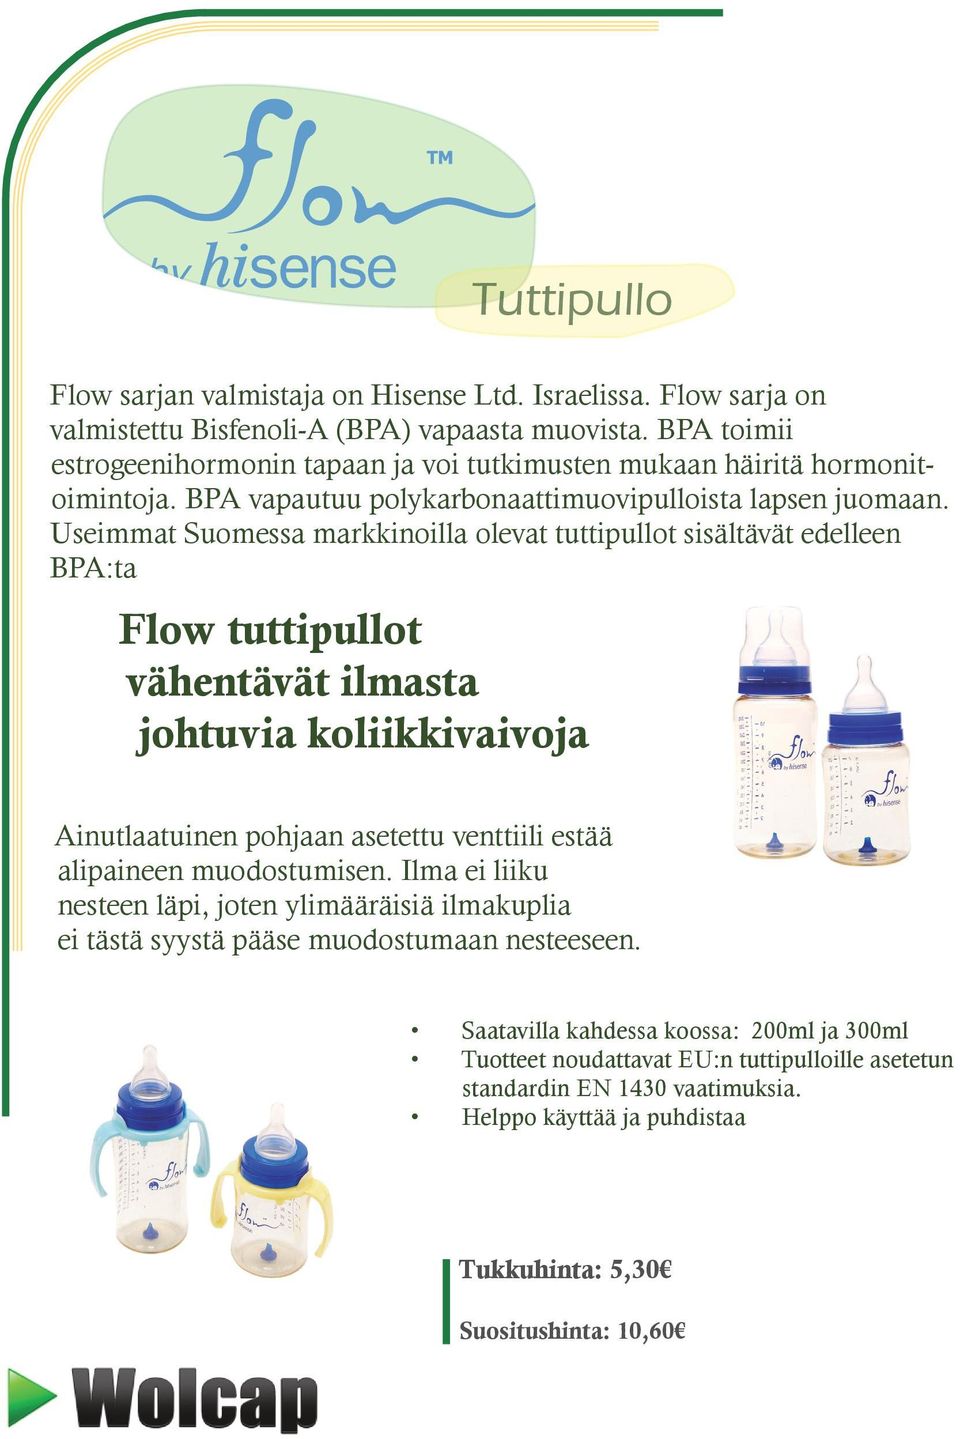 Useimmat Suomessa markkinoilla olevat tuttipullot sisältävät edelleen BPA:ta Flow tuttipullot vähentävät ilmasta johtuvia koliikkivaivoja Ainutlaatuinen pohjaan asetettu venttiili estää